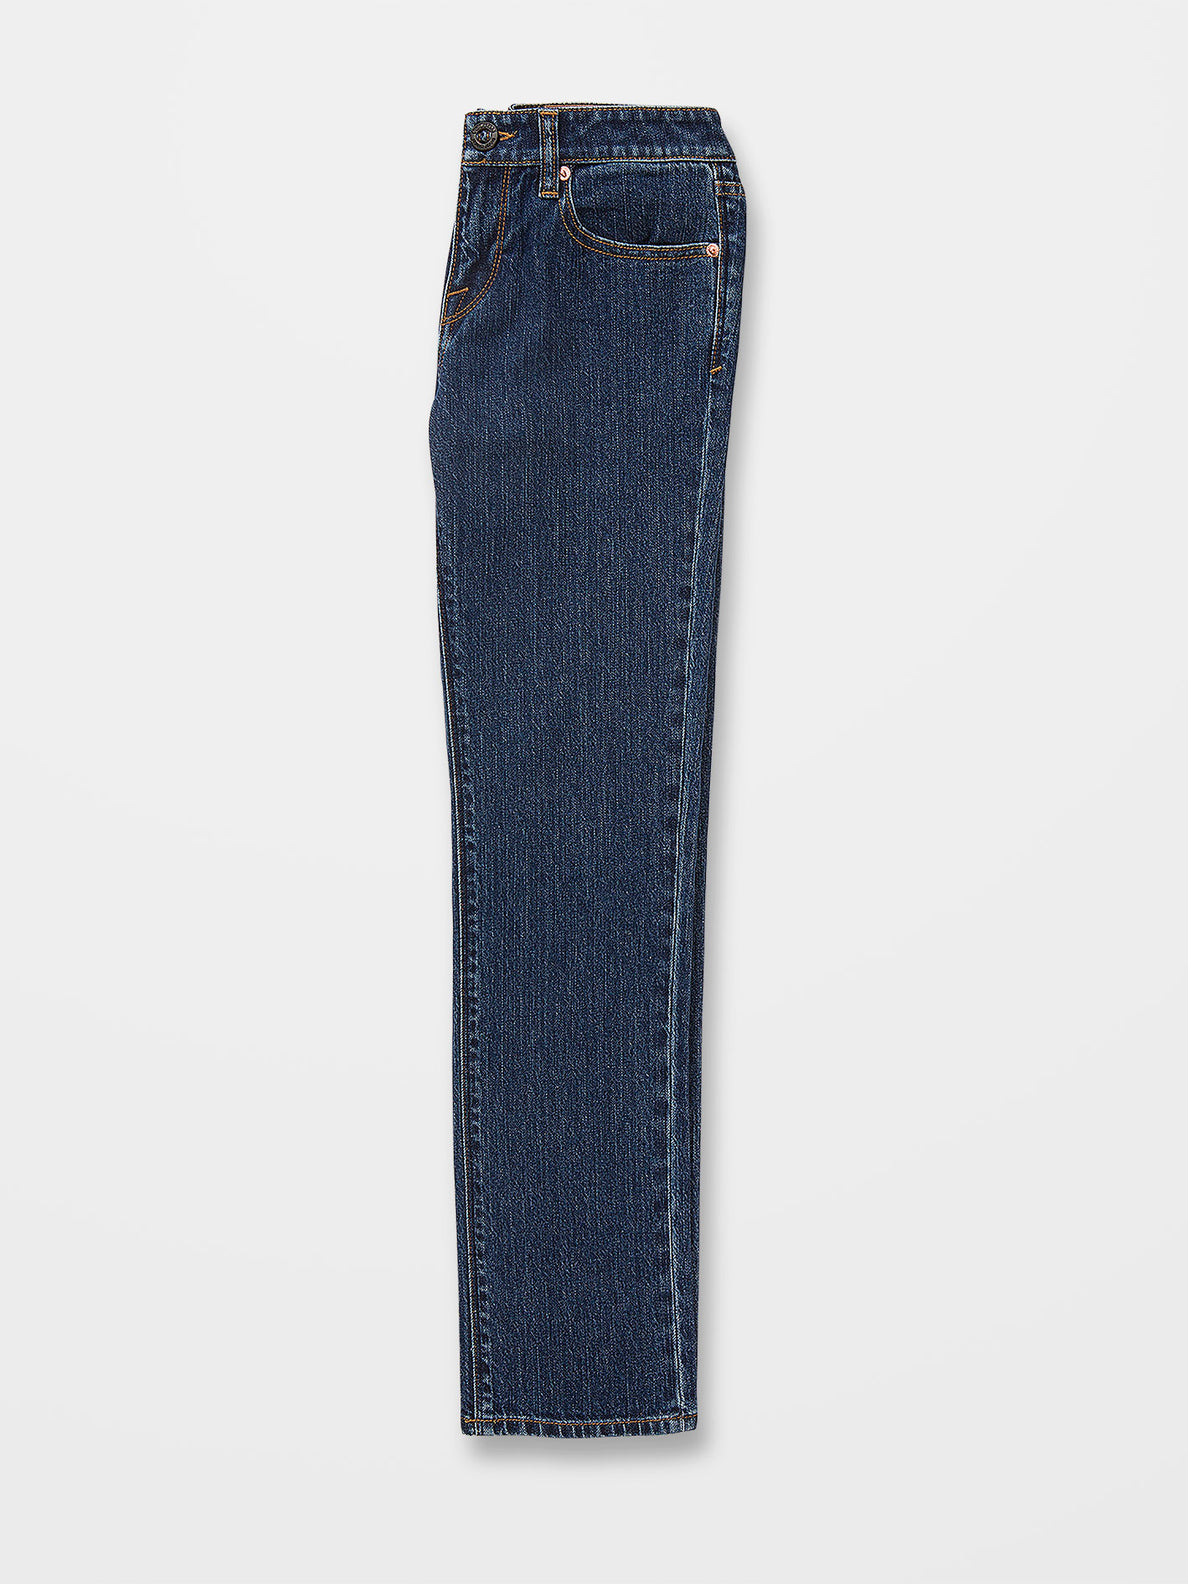 Vorta Jeans - INDIGO RIDGE WASH - (KIDS) (C1932203_IRW) [1]